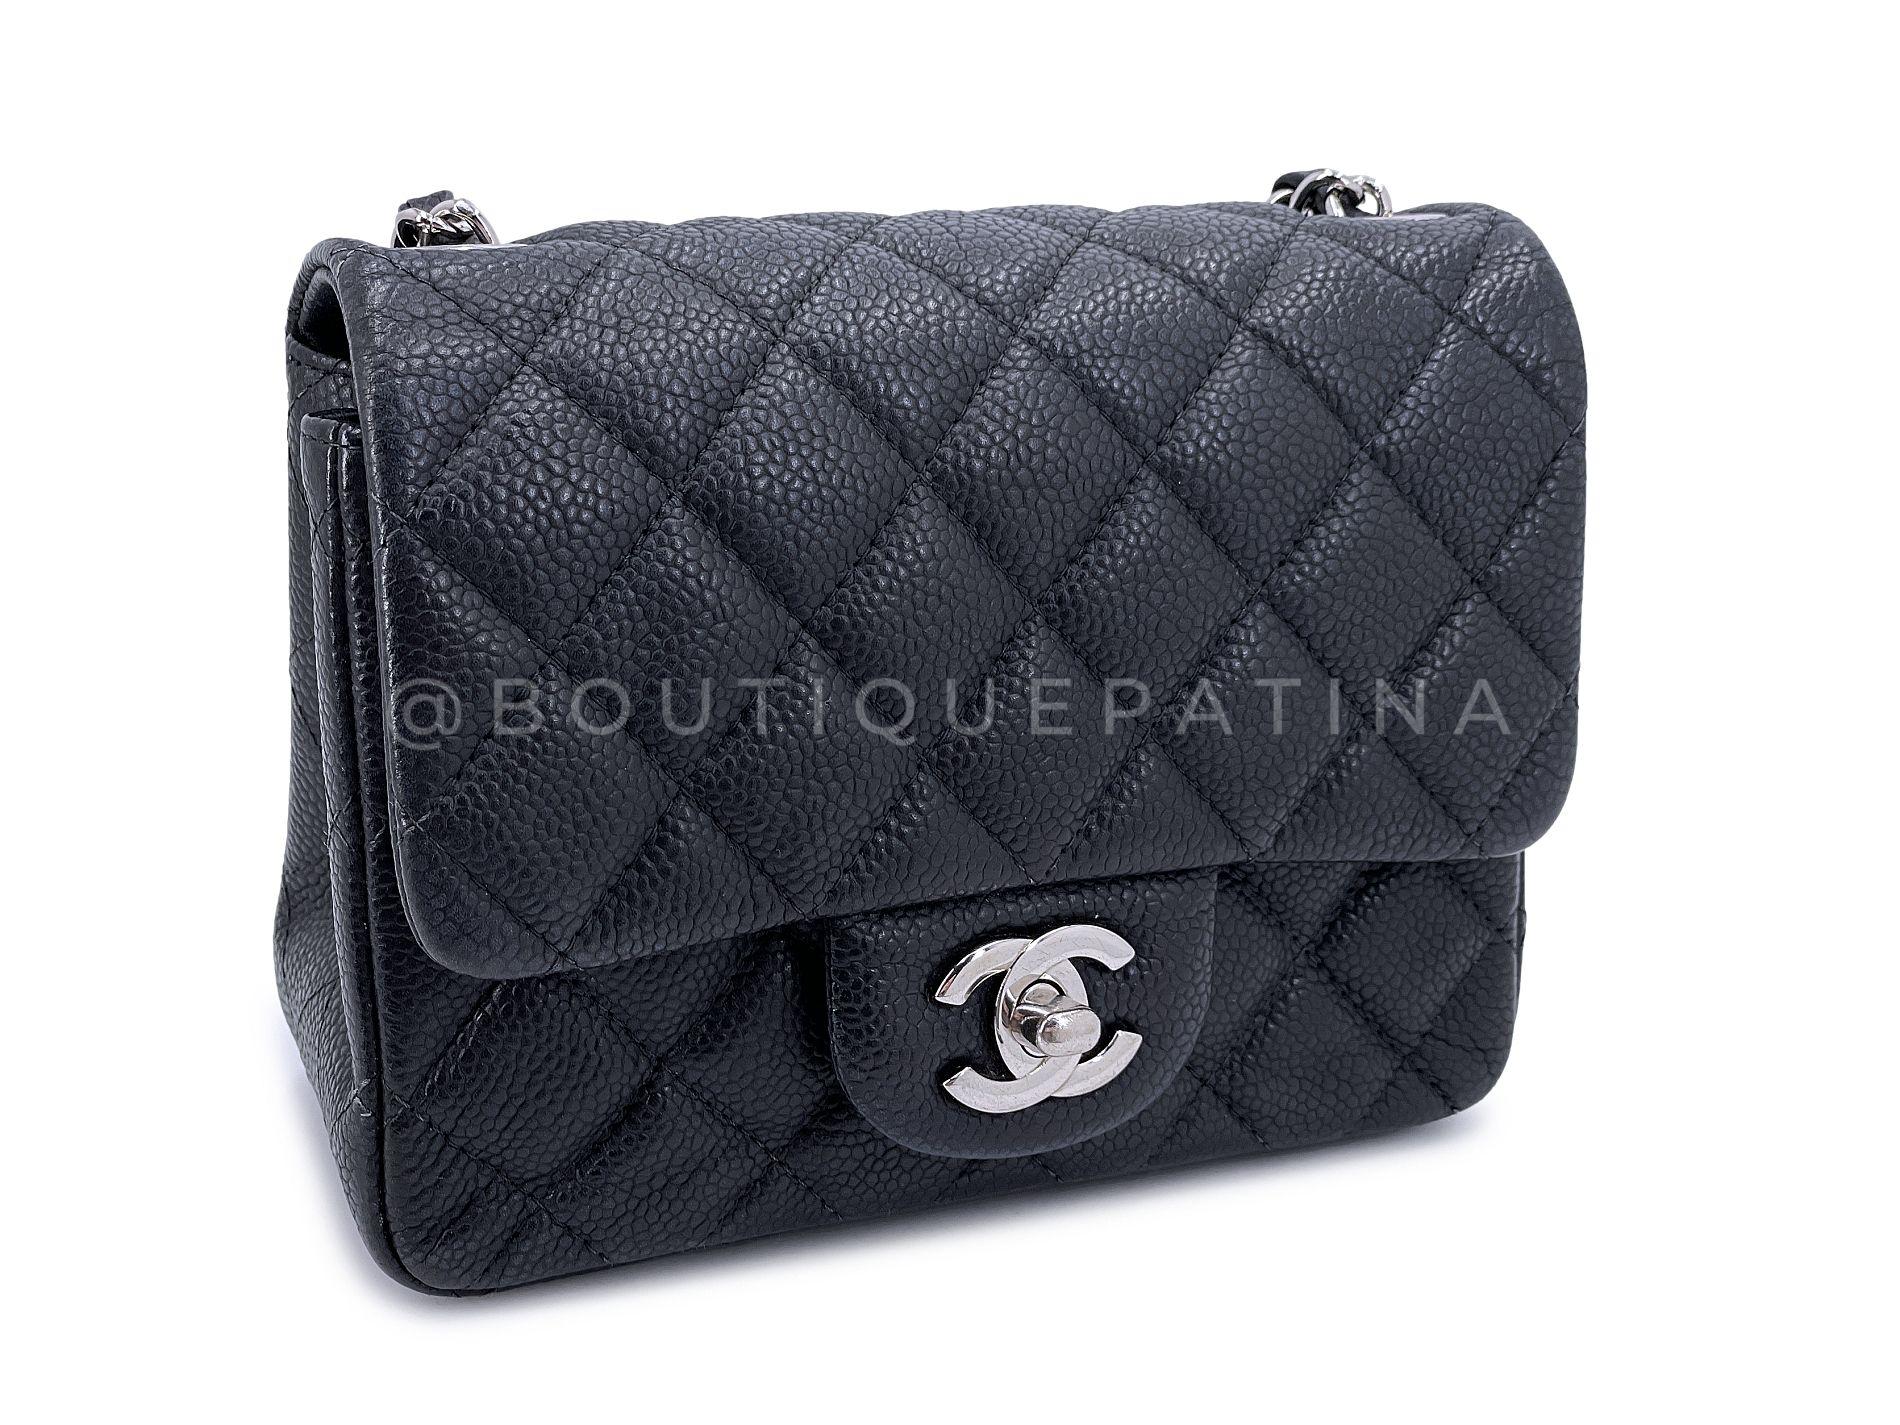 Chanel Black Caviar Square Mini Classic Flap Bag SHW 68093 In Excellent Condition For Sale In Costa Mesa, CA